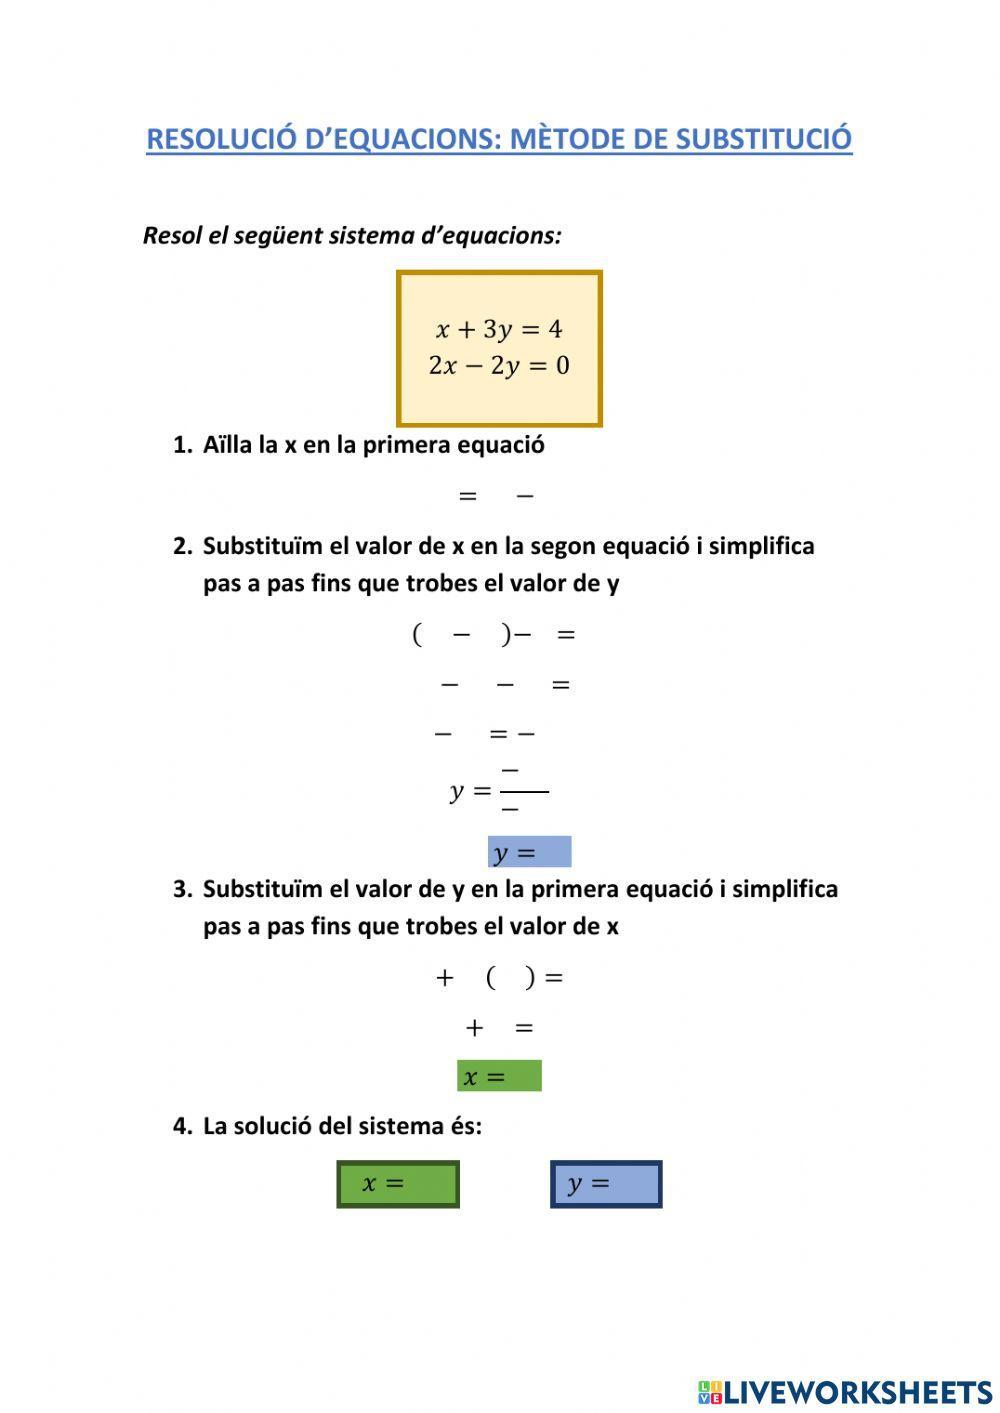 Resolució d'equacions: mètode de substitució